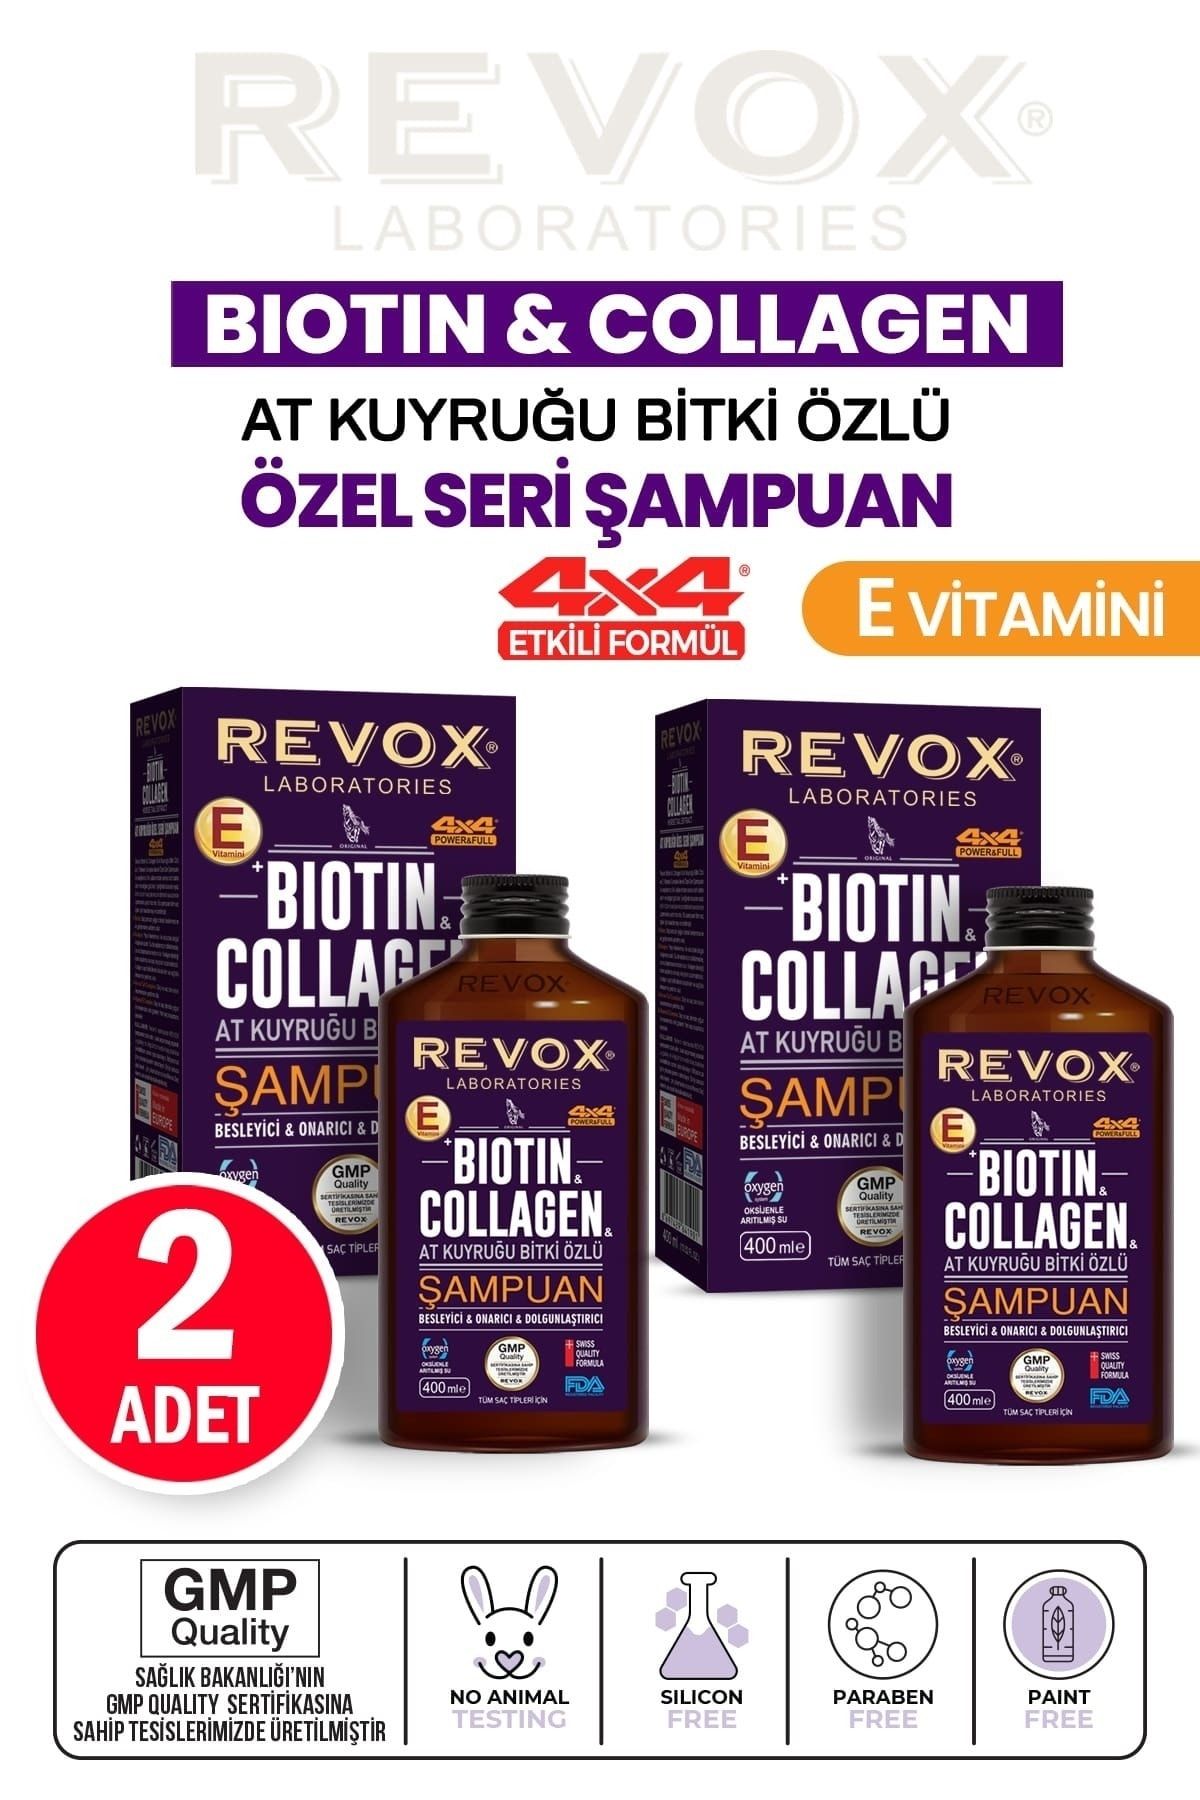 Revox Biotin Ve Collagen, At Kuyruğu Bitki Özlü Şampuan - Avantajlı Paket 2 X Adet